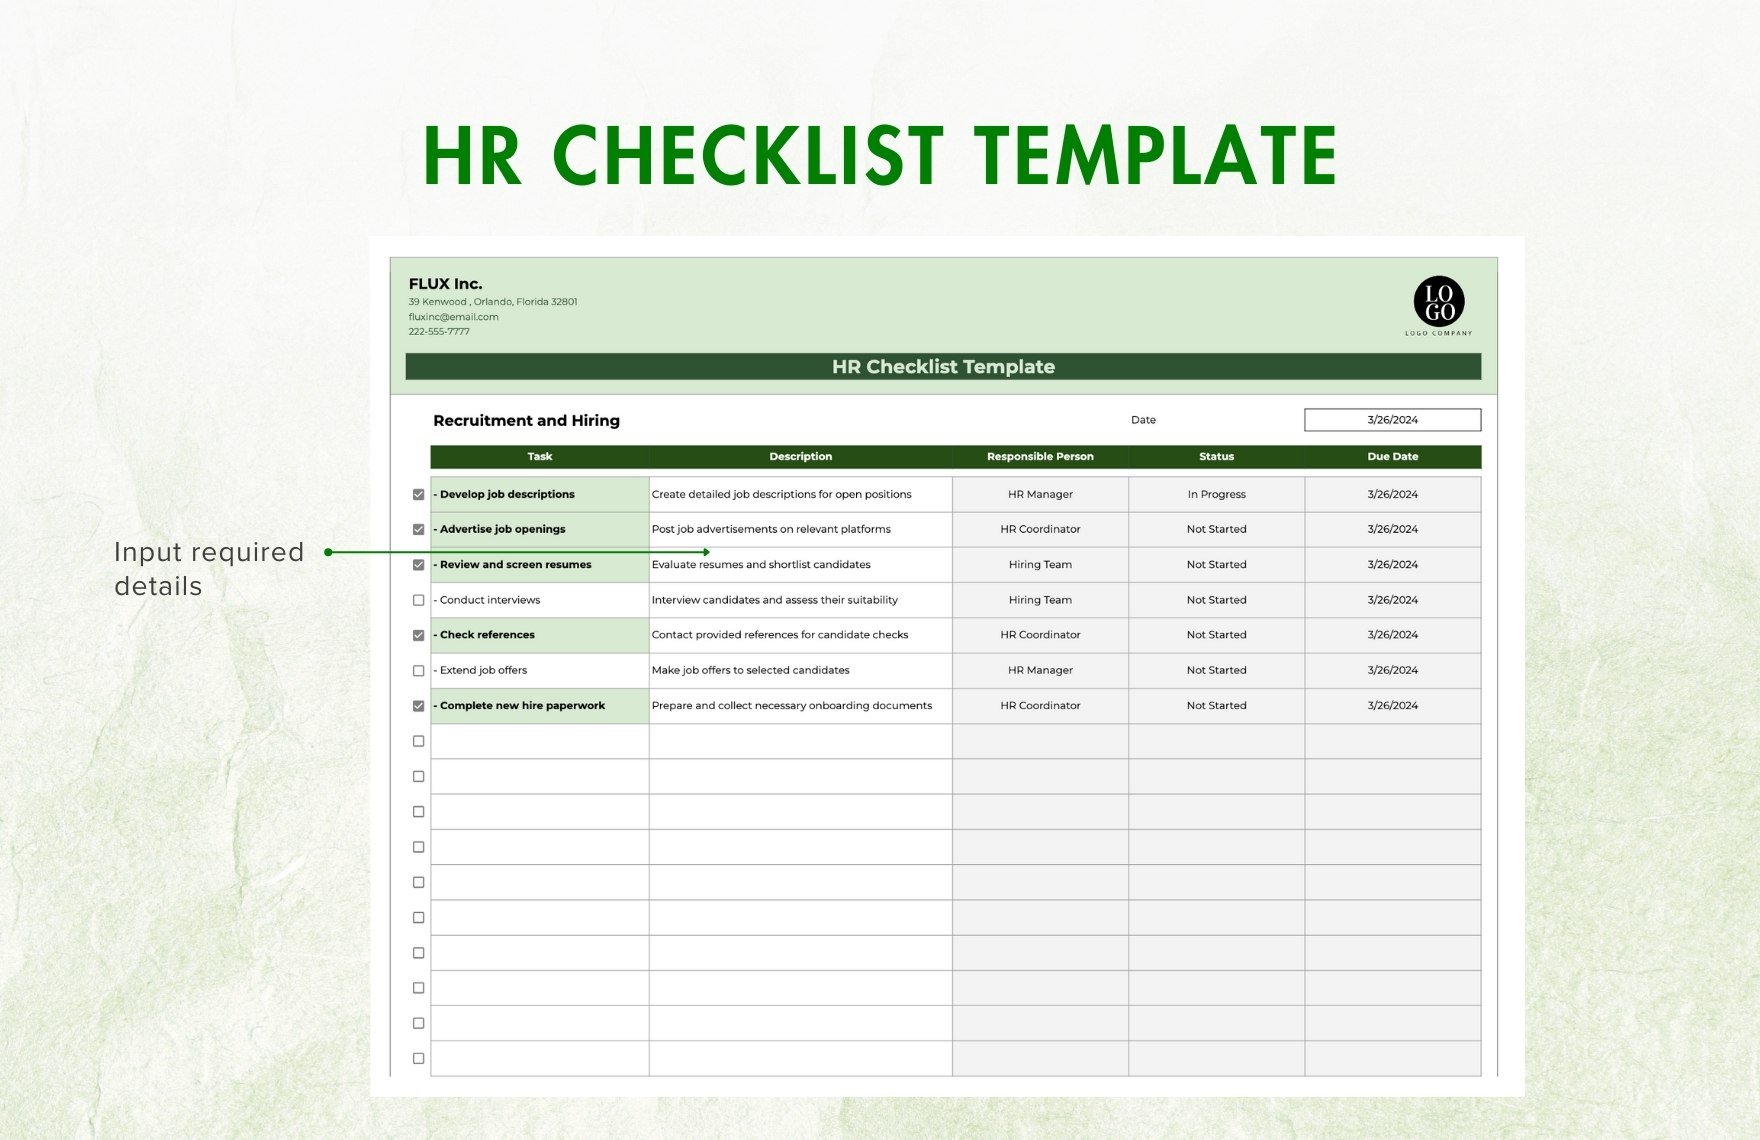 HR Checklist Template